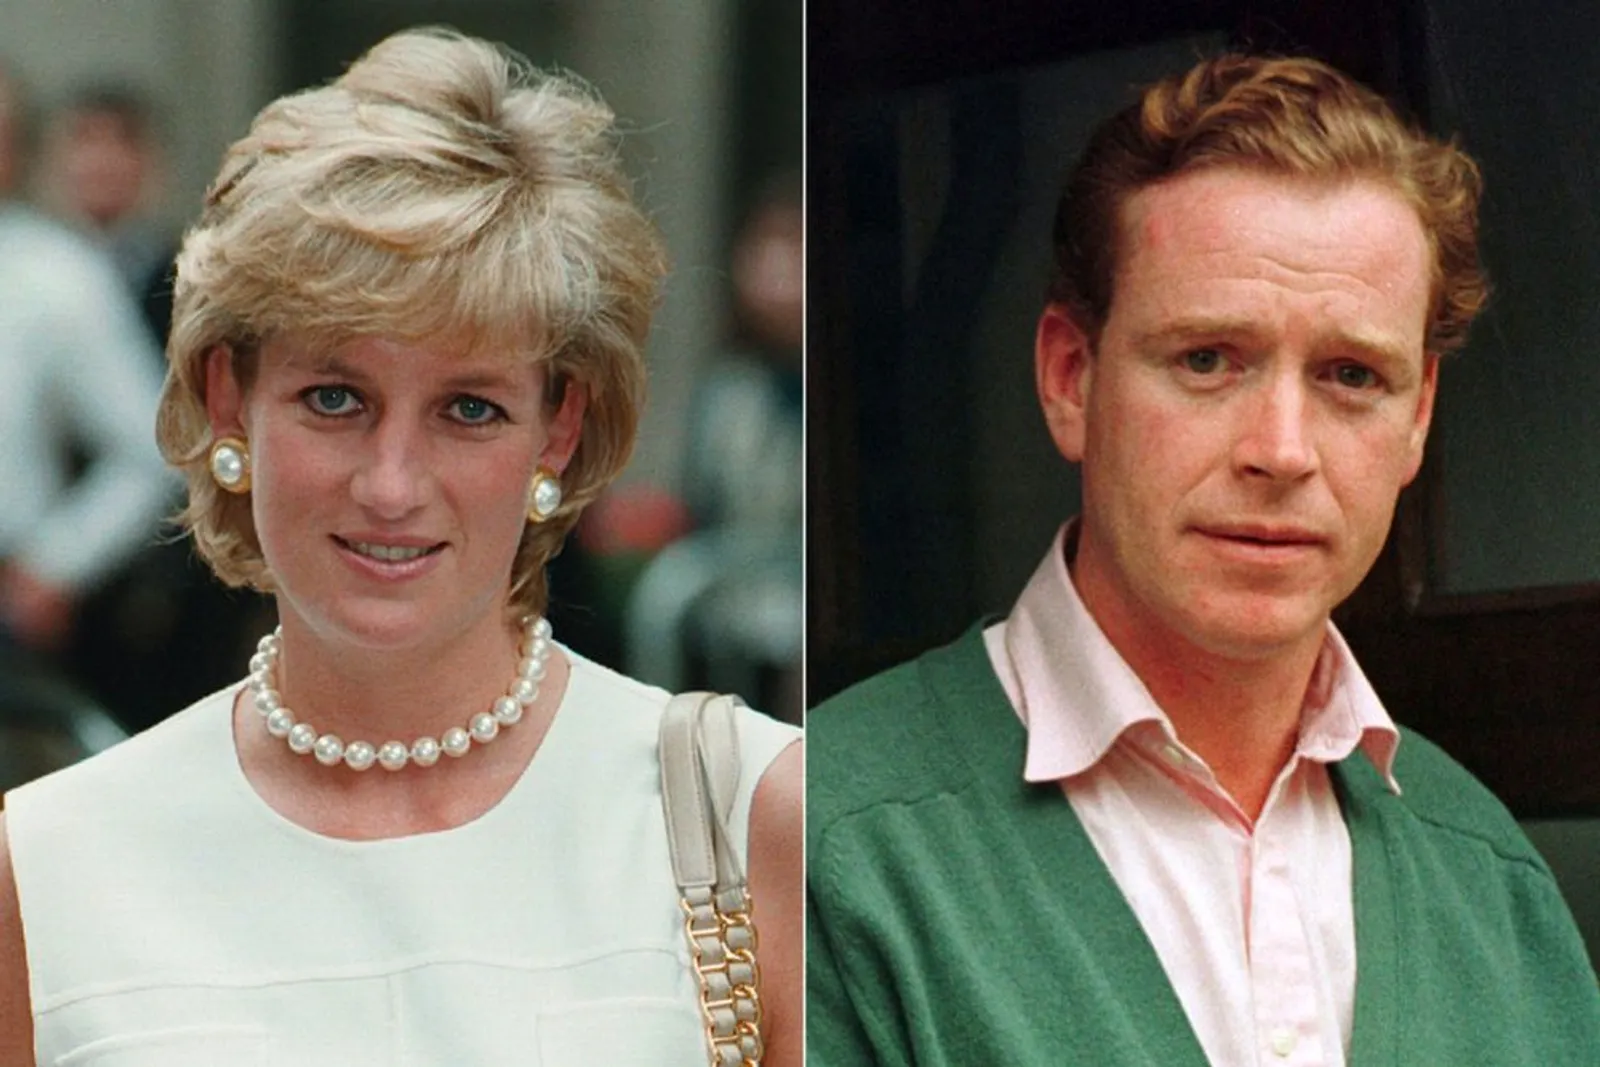 Tuai Kontroversi, Ini Kisah Peselingkuhan Putri Diana dan James Hewitt